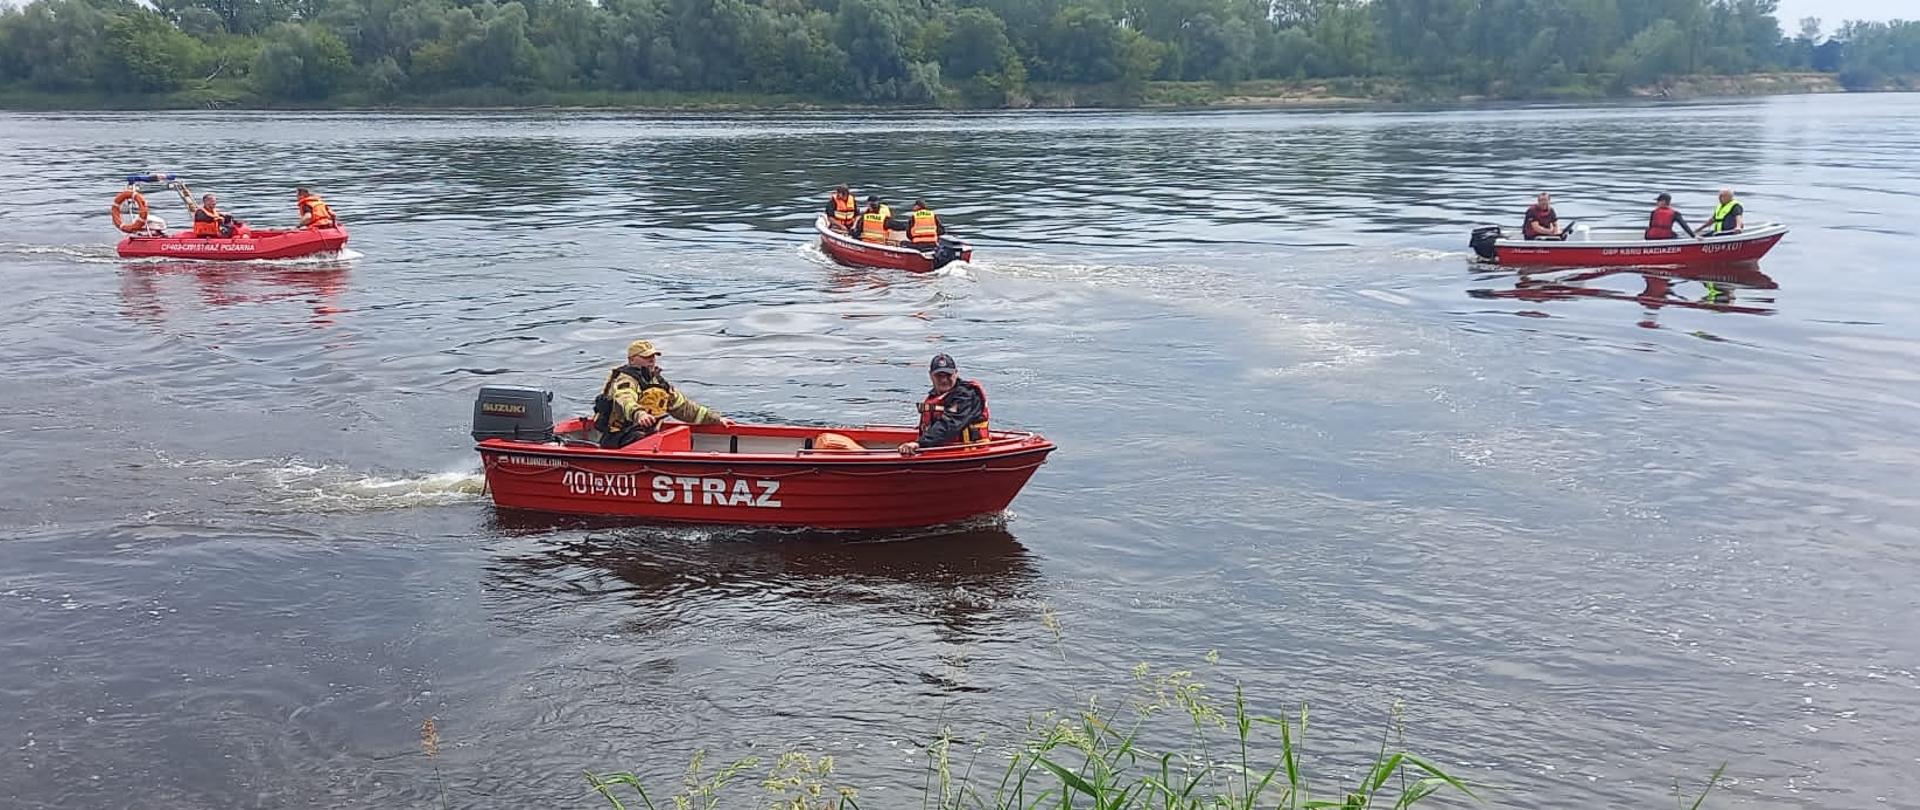 cztery lodzie strażackie wraz ze strażakami podczas ćwiczeń z zakresy ratownictwa wodnego na rzece Wisła